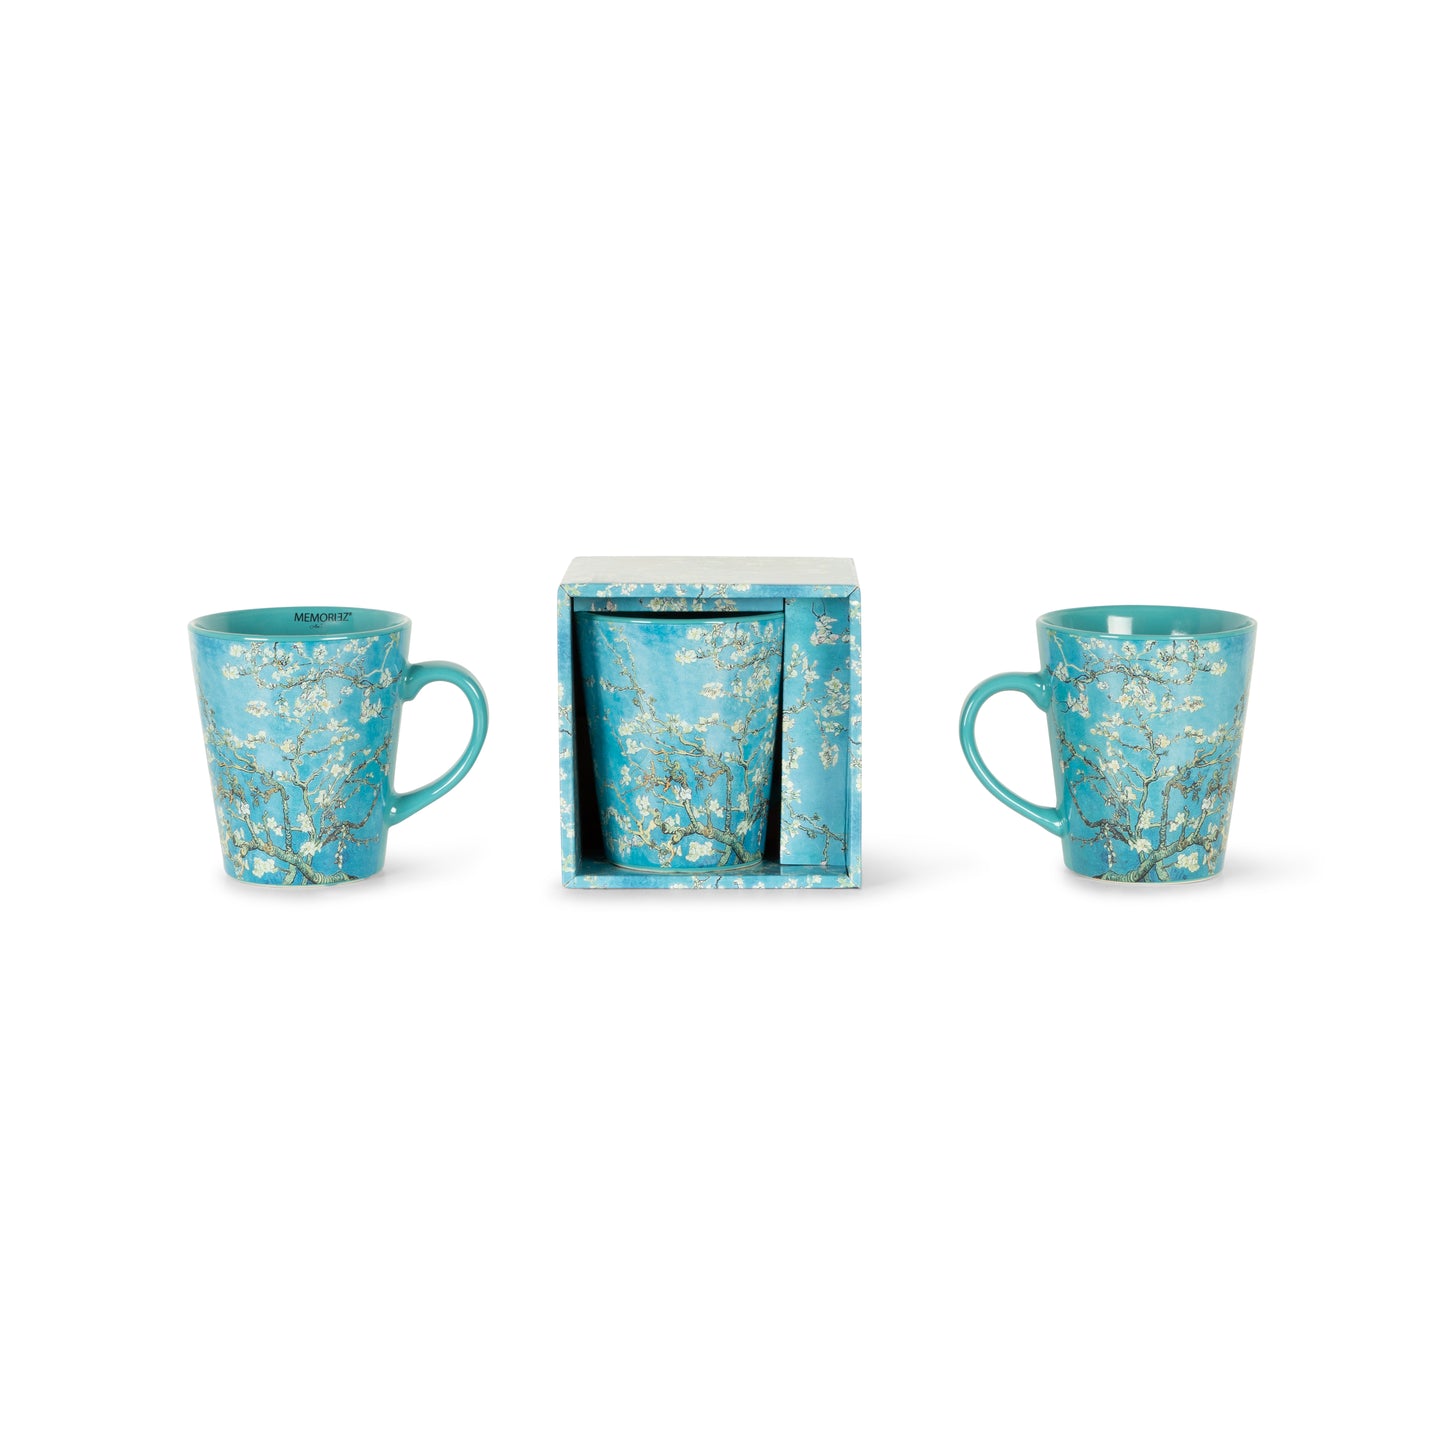 V-shape mug - Blossom - van Gogh